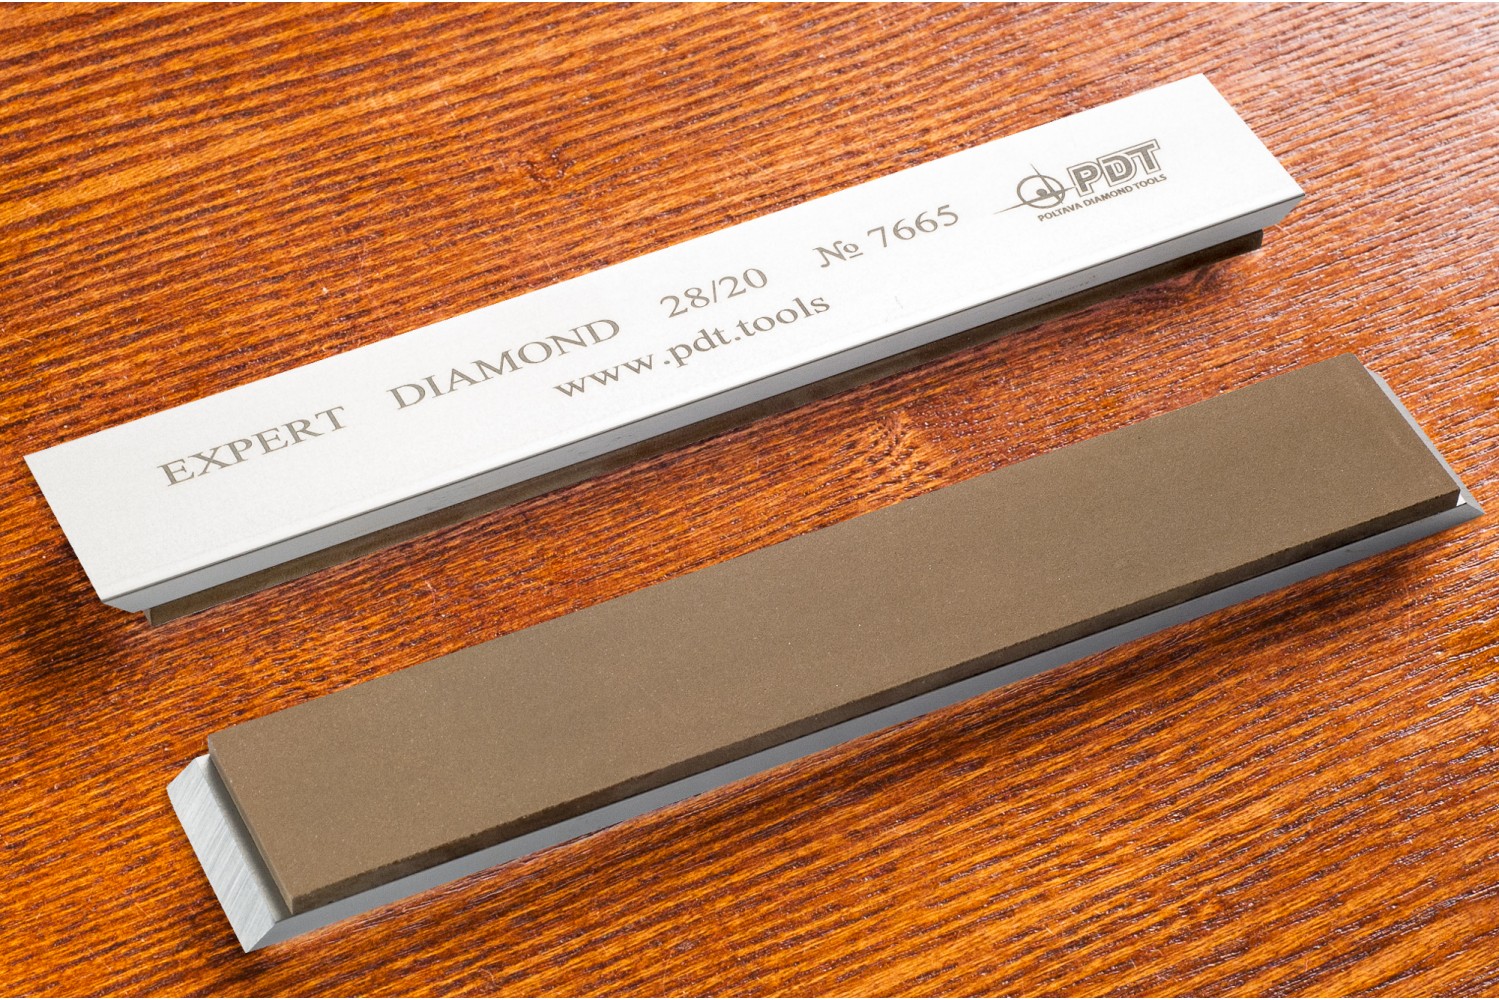 Алмазный брусок для заточки PDT EXPERT 150-25-3мм 28/20 мкм на алюминиевом бланке водный точильный камень для заточки инструментов suehiro 1000